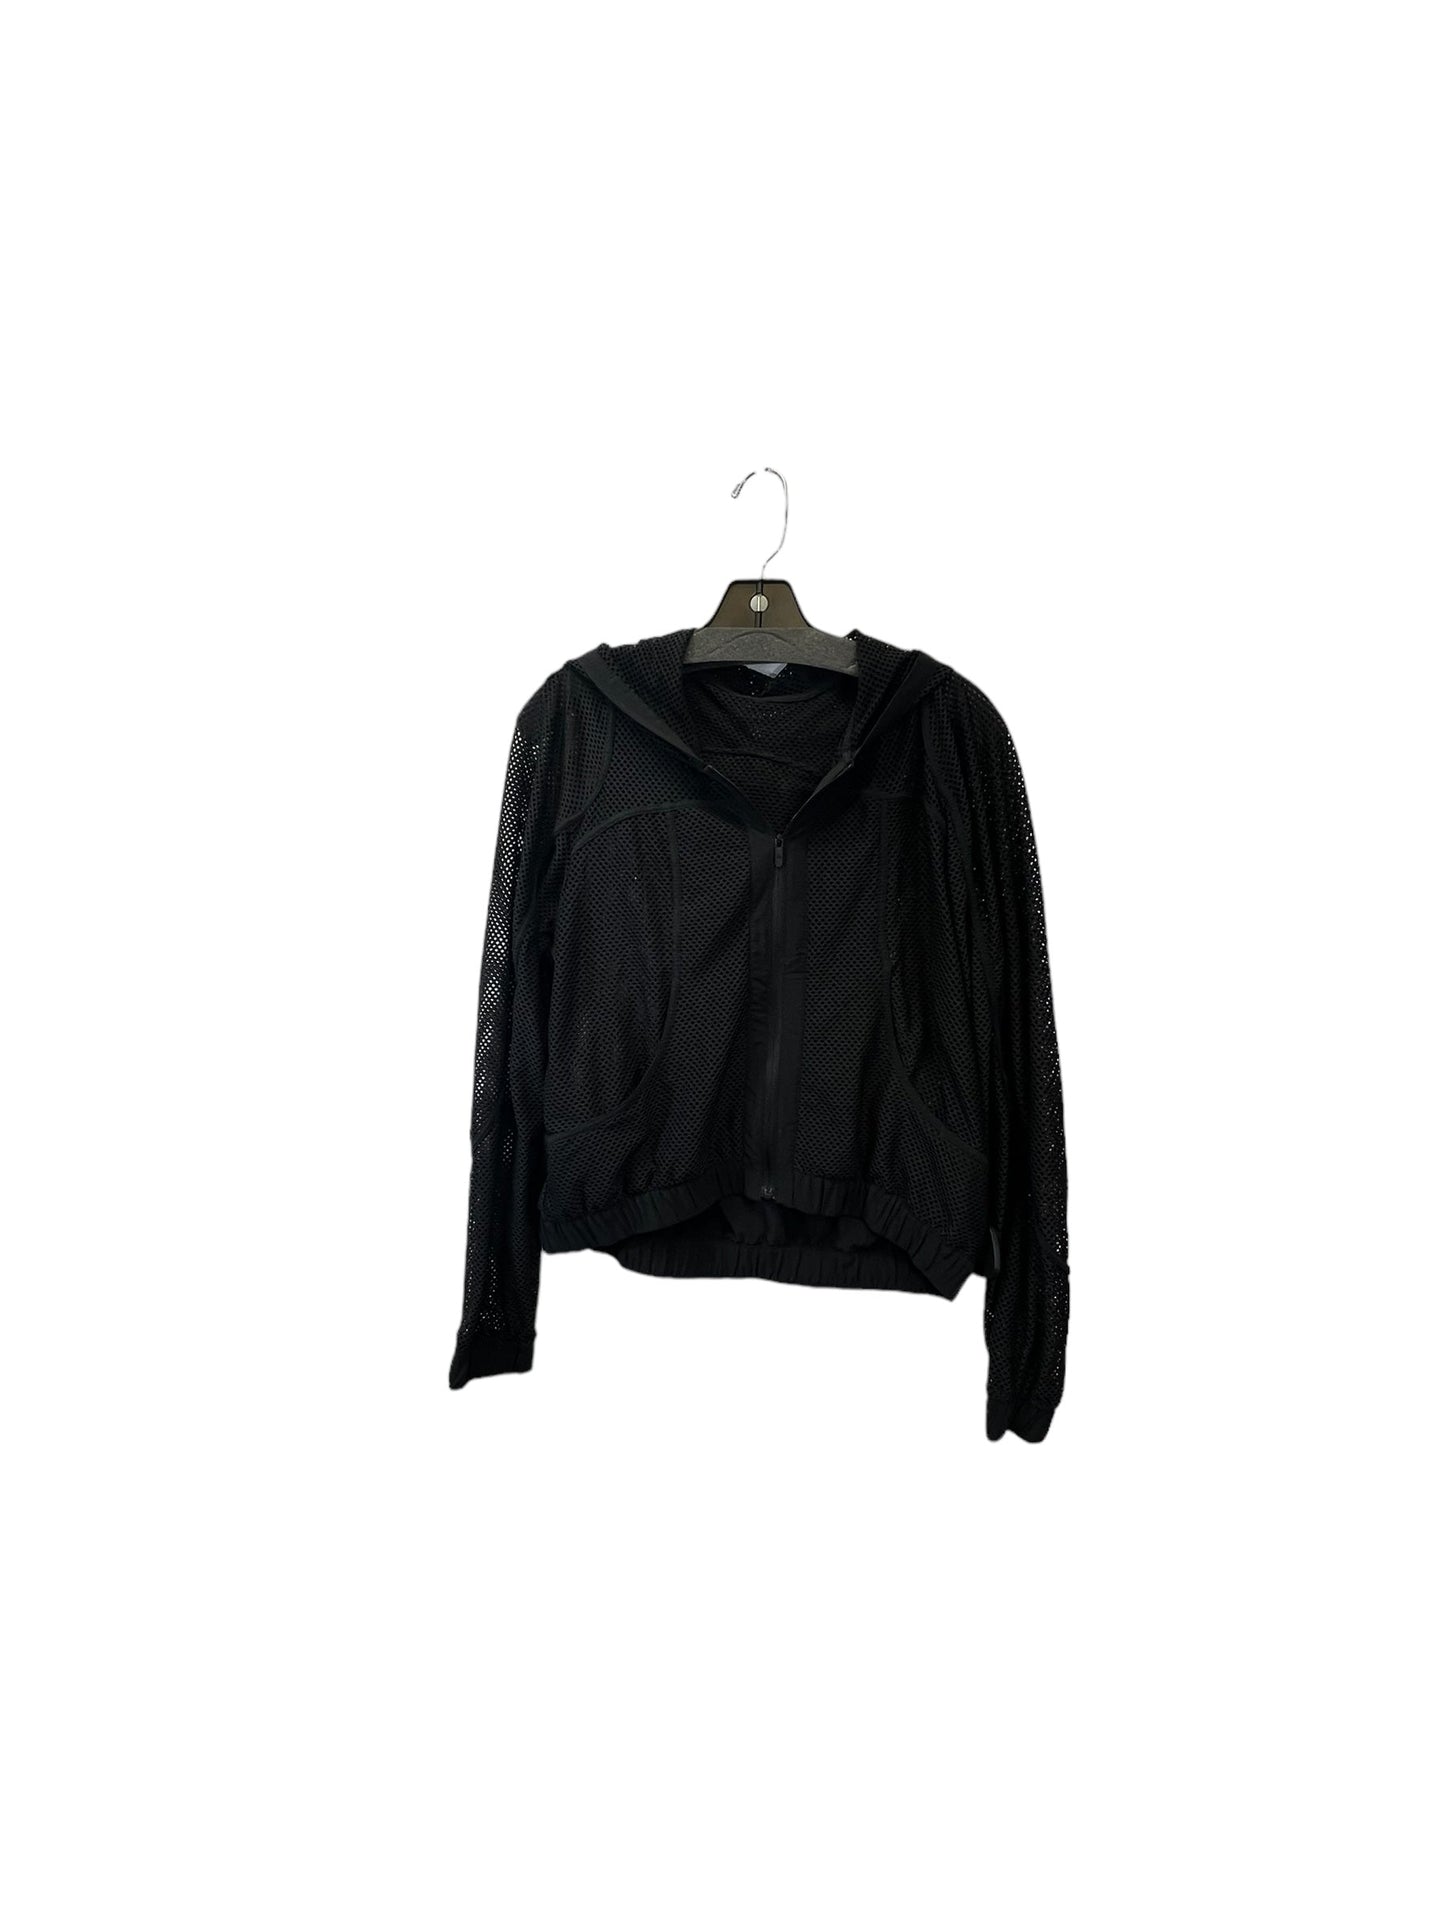 Black Athletic Jacket Lululemon, Size 4